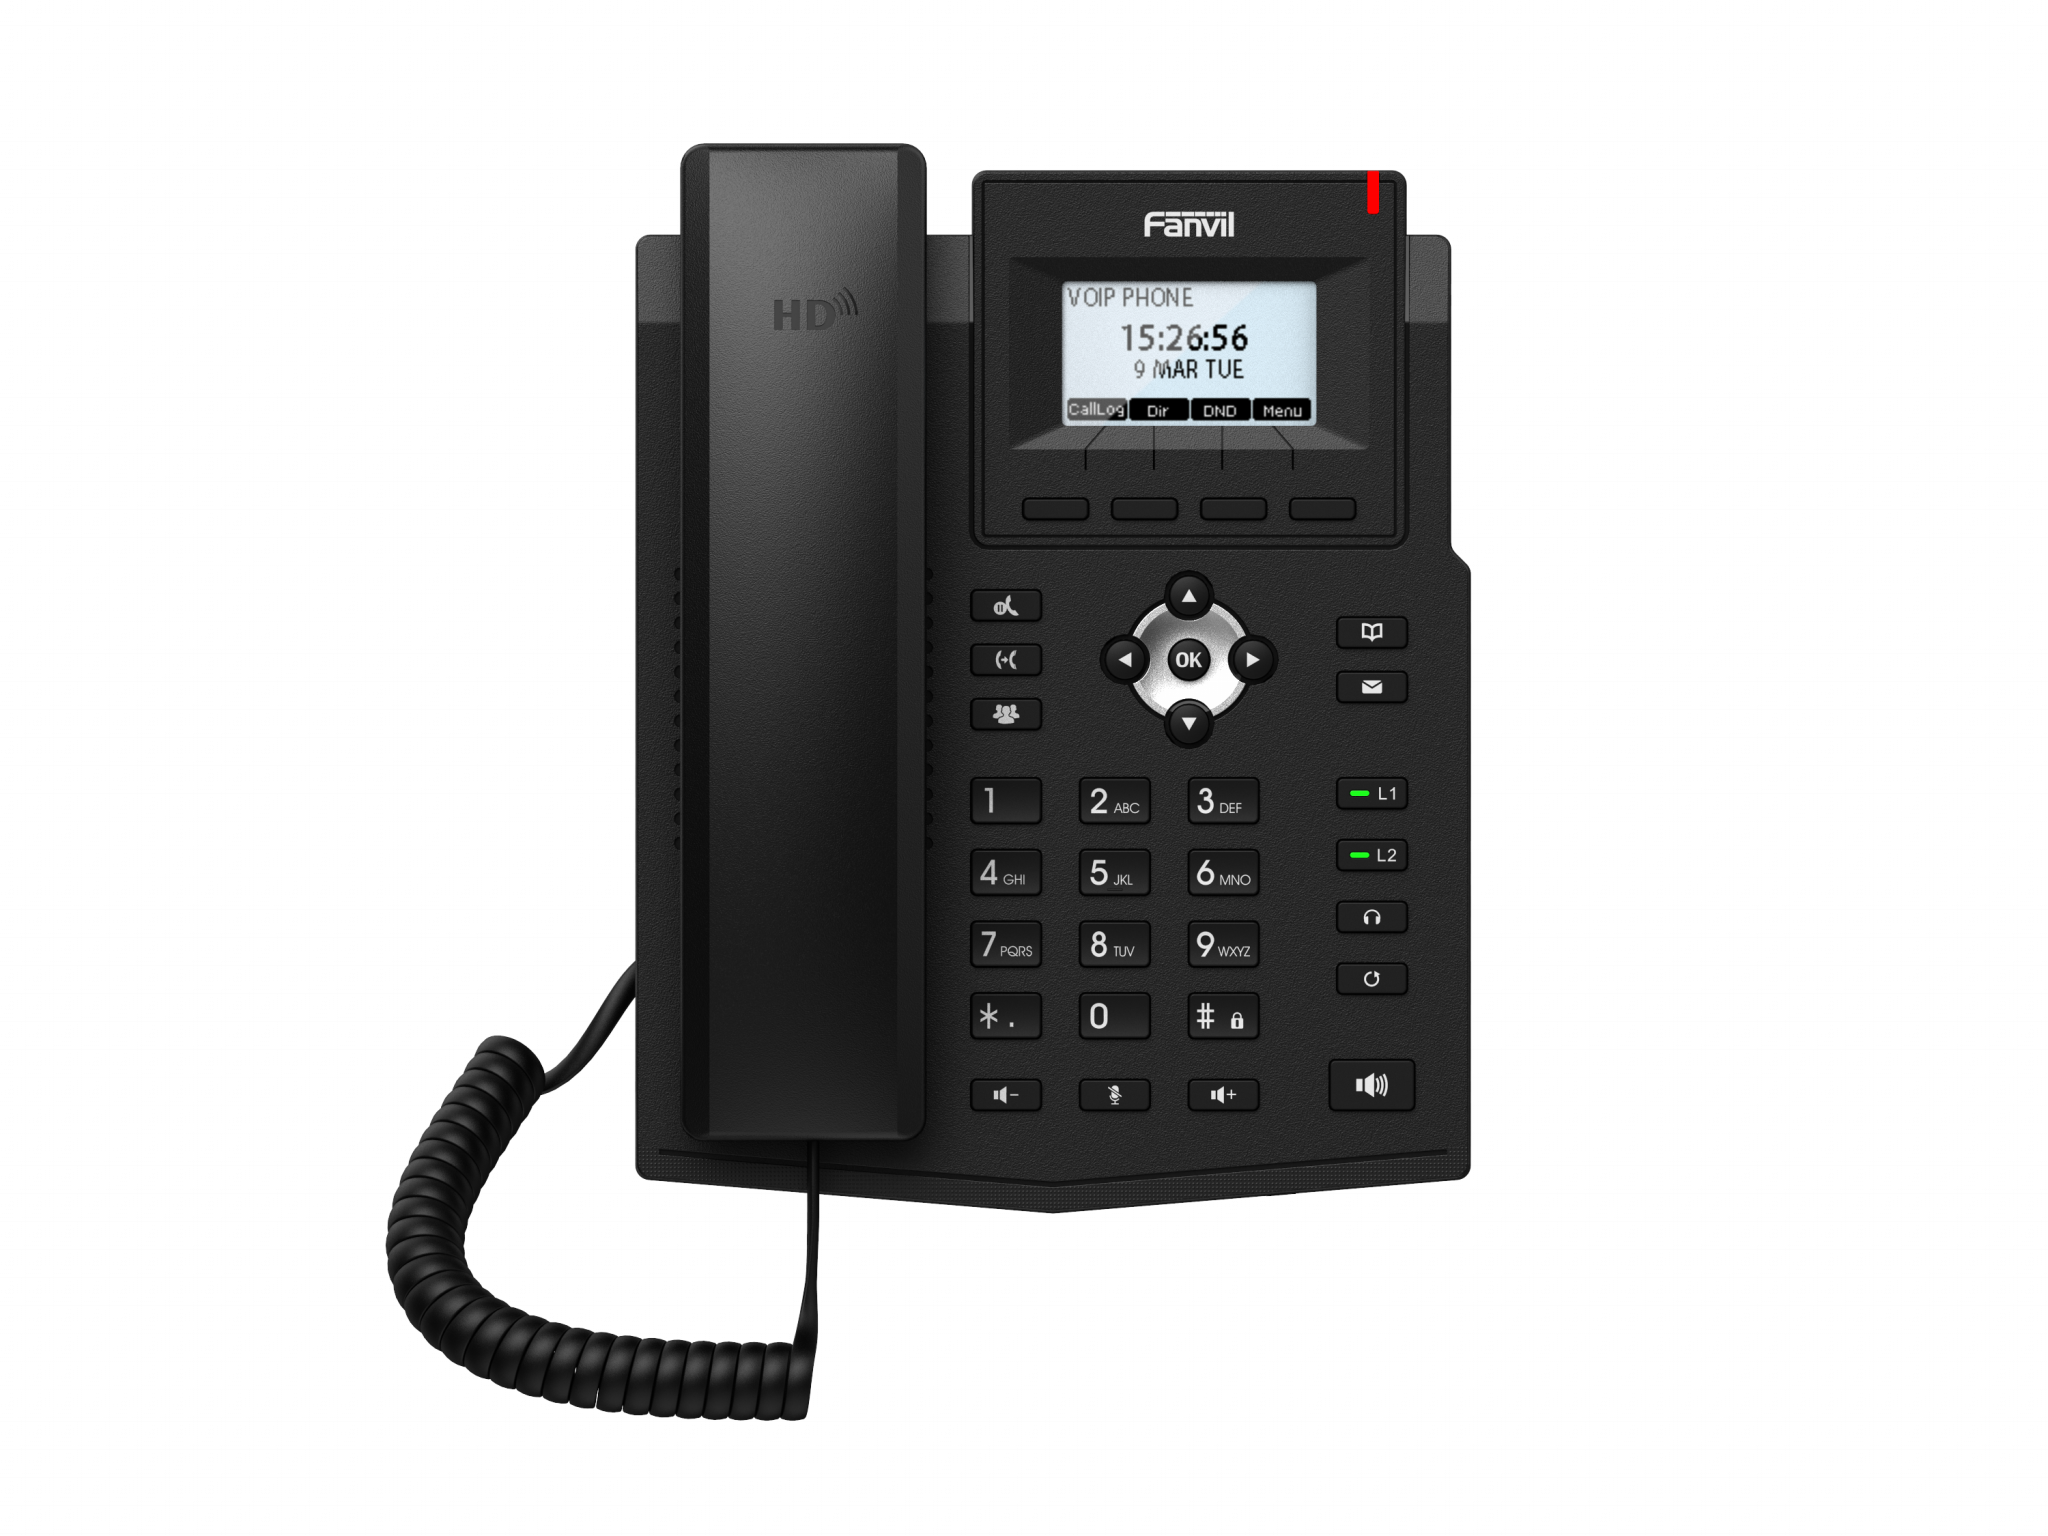 VoIP телефоны VoIP-телефон Fanvil X3SP Lite, 2 линии, монохромный дисплей, PoE, черный (X3SP LITE)